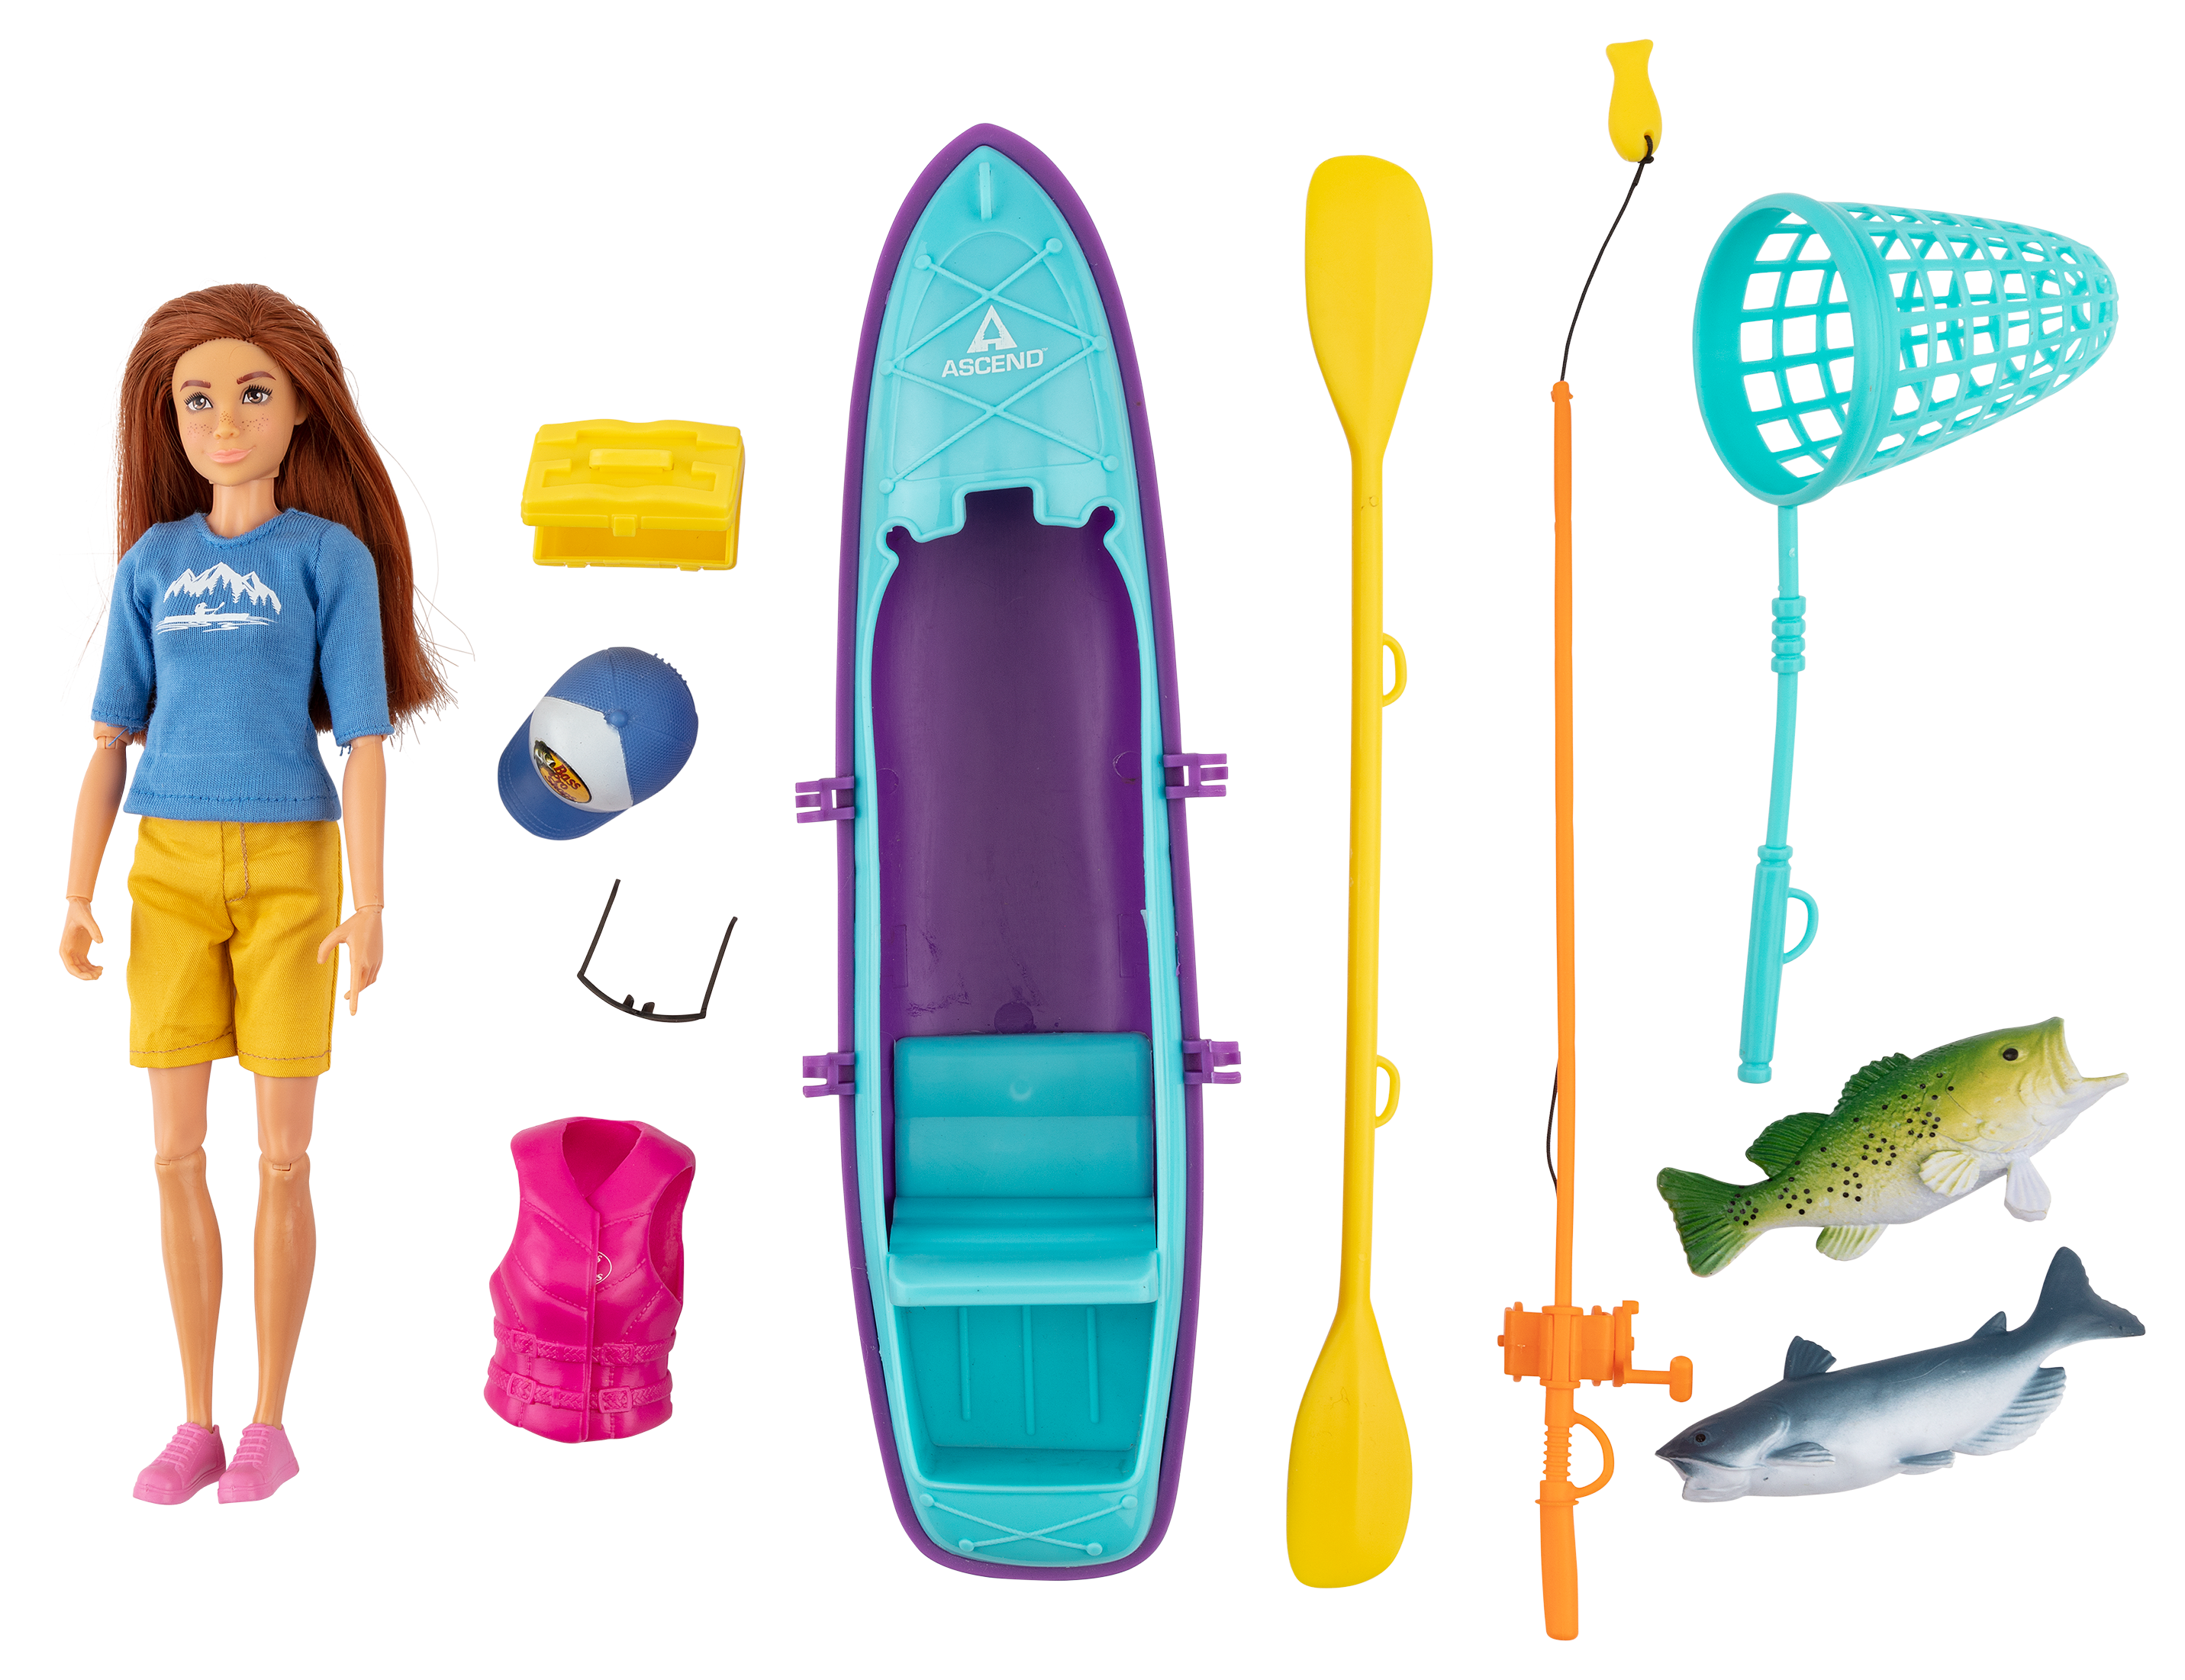 Big Country Toys - Fishing Toy Playset - Kids Fishing Set